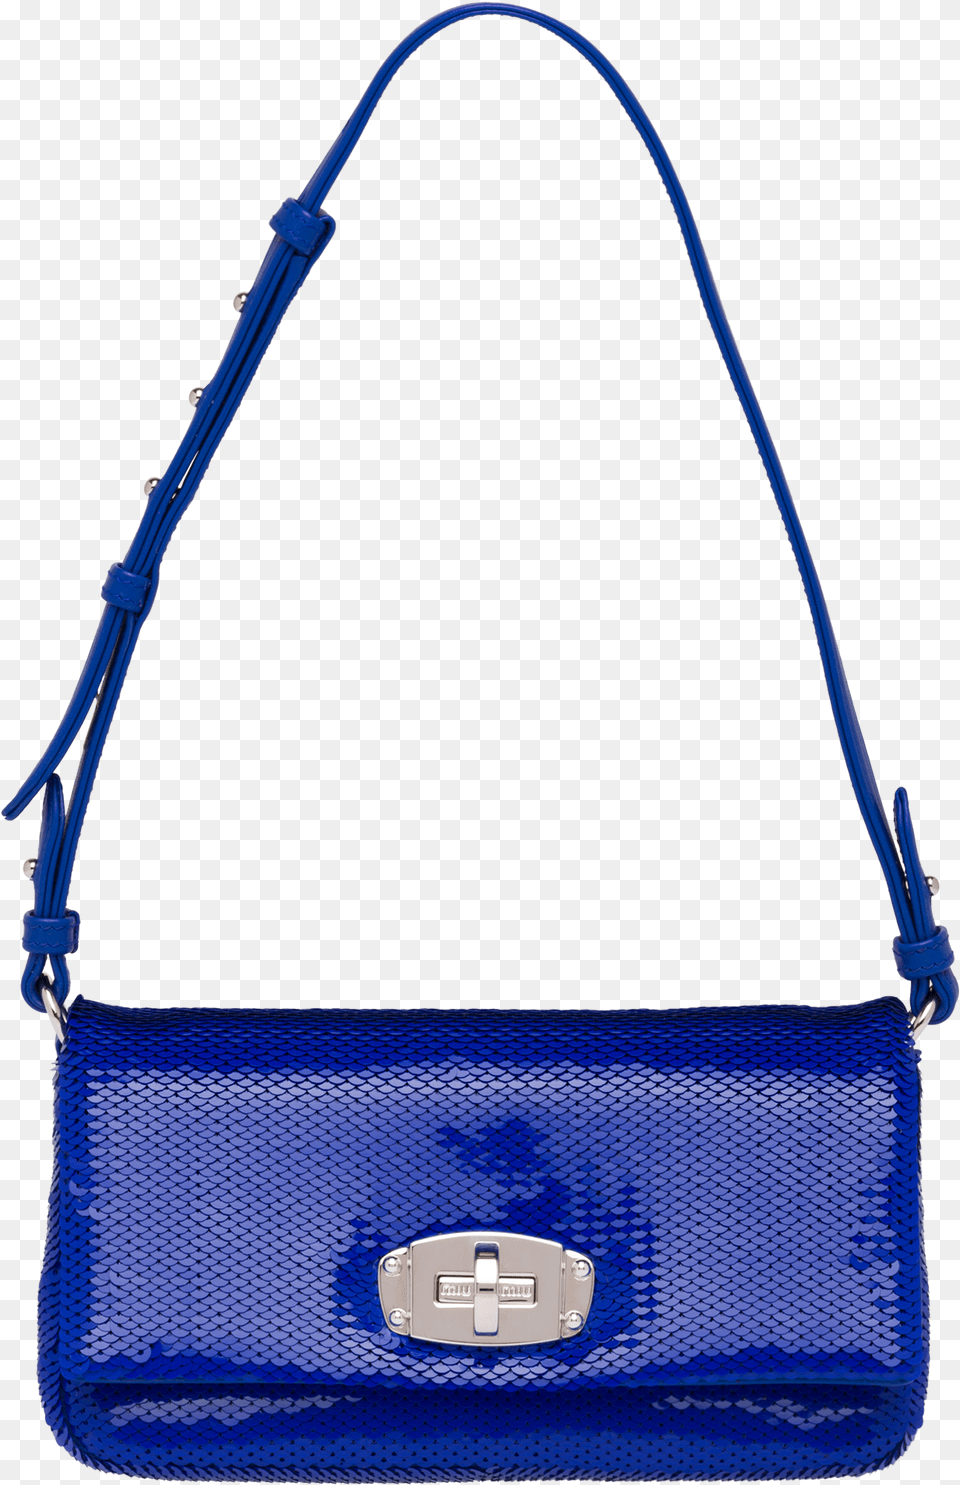 Sequin Shoulder Bag Handbag, Accessories, Purse Png